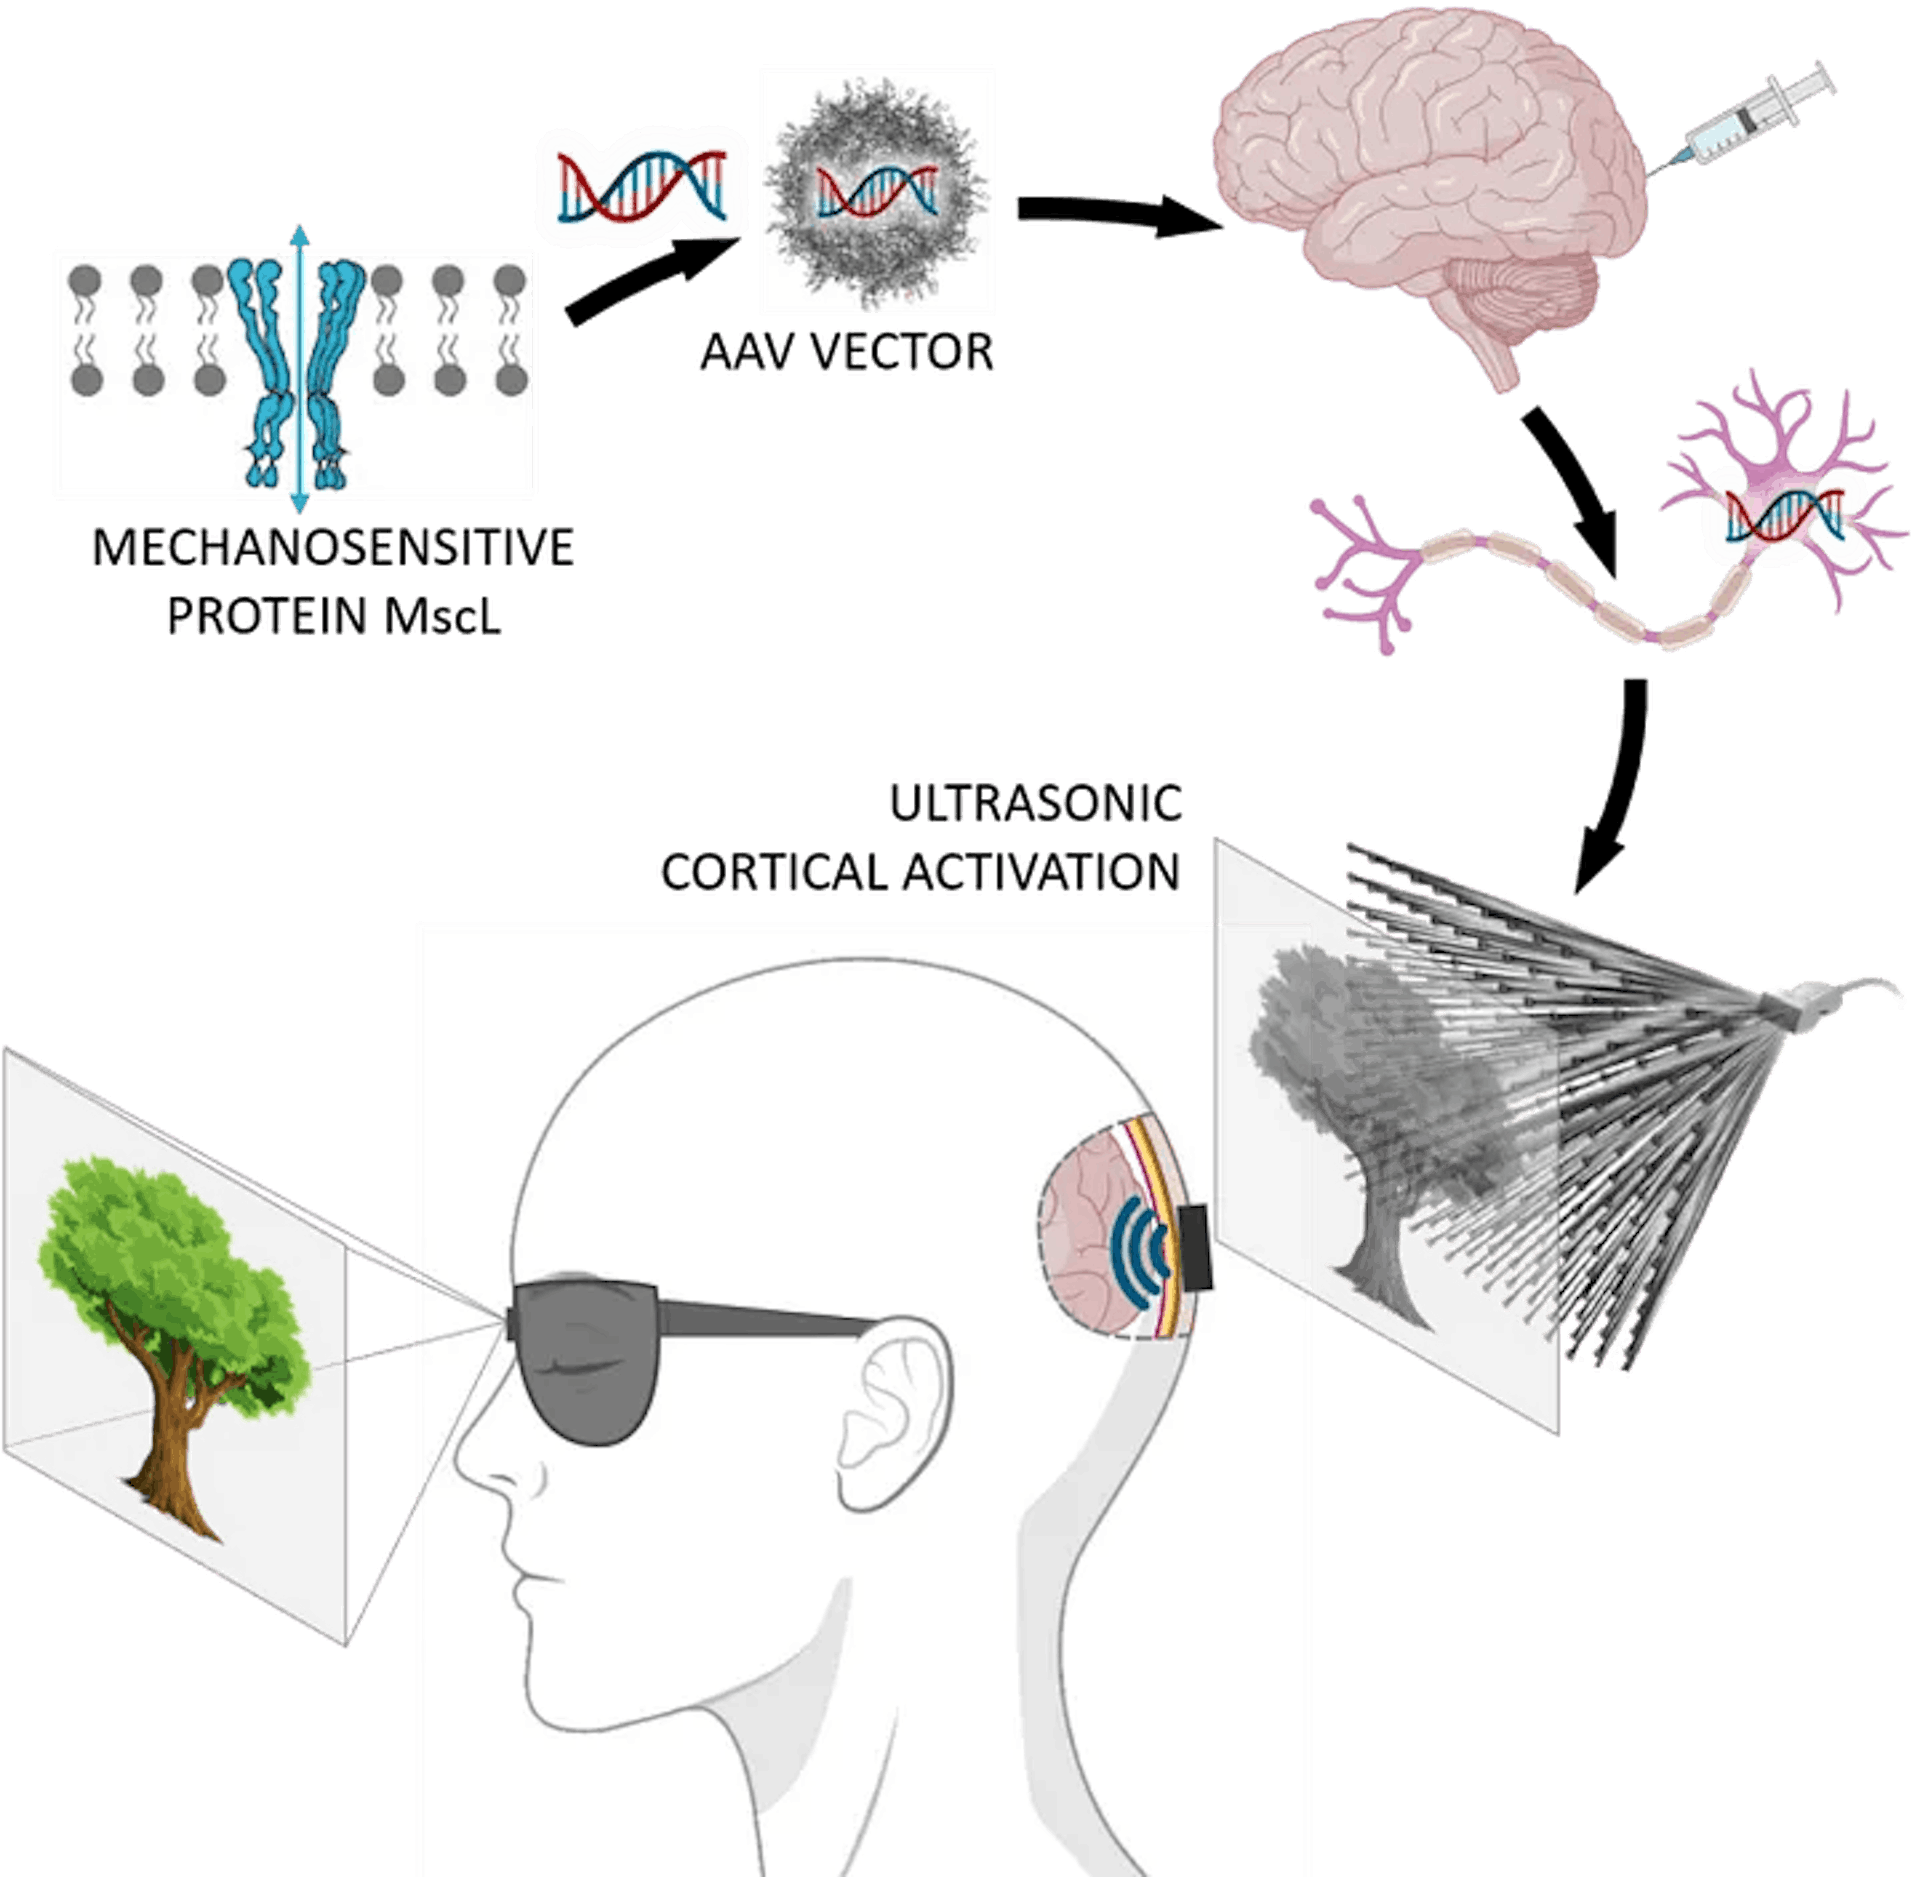 hình ảnh có thể được chiếu trực tiếp lên não bằng sóng siêu âm để chữa mù lòa, nguồn: https://www.phycsformedicine.espci.fr/publication-in-nature-nanotechnology-towards-restoring-vision-USE-ulrasound-sonogenics